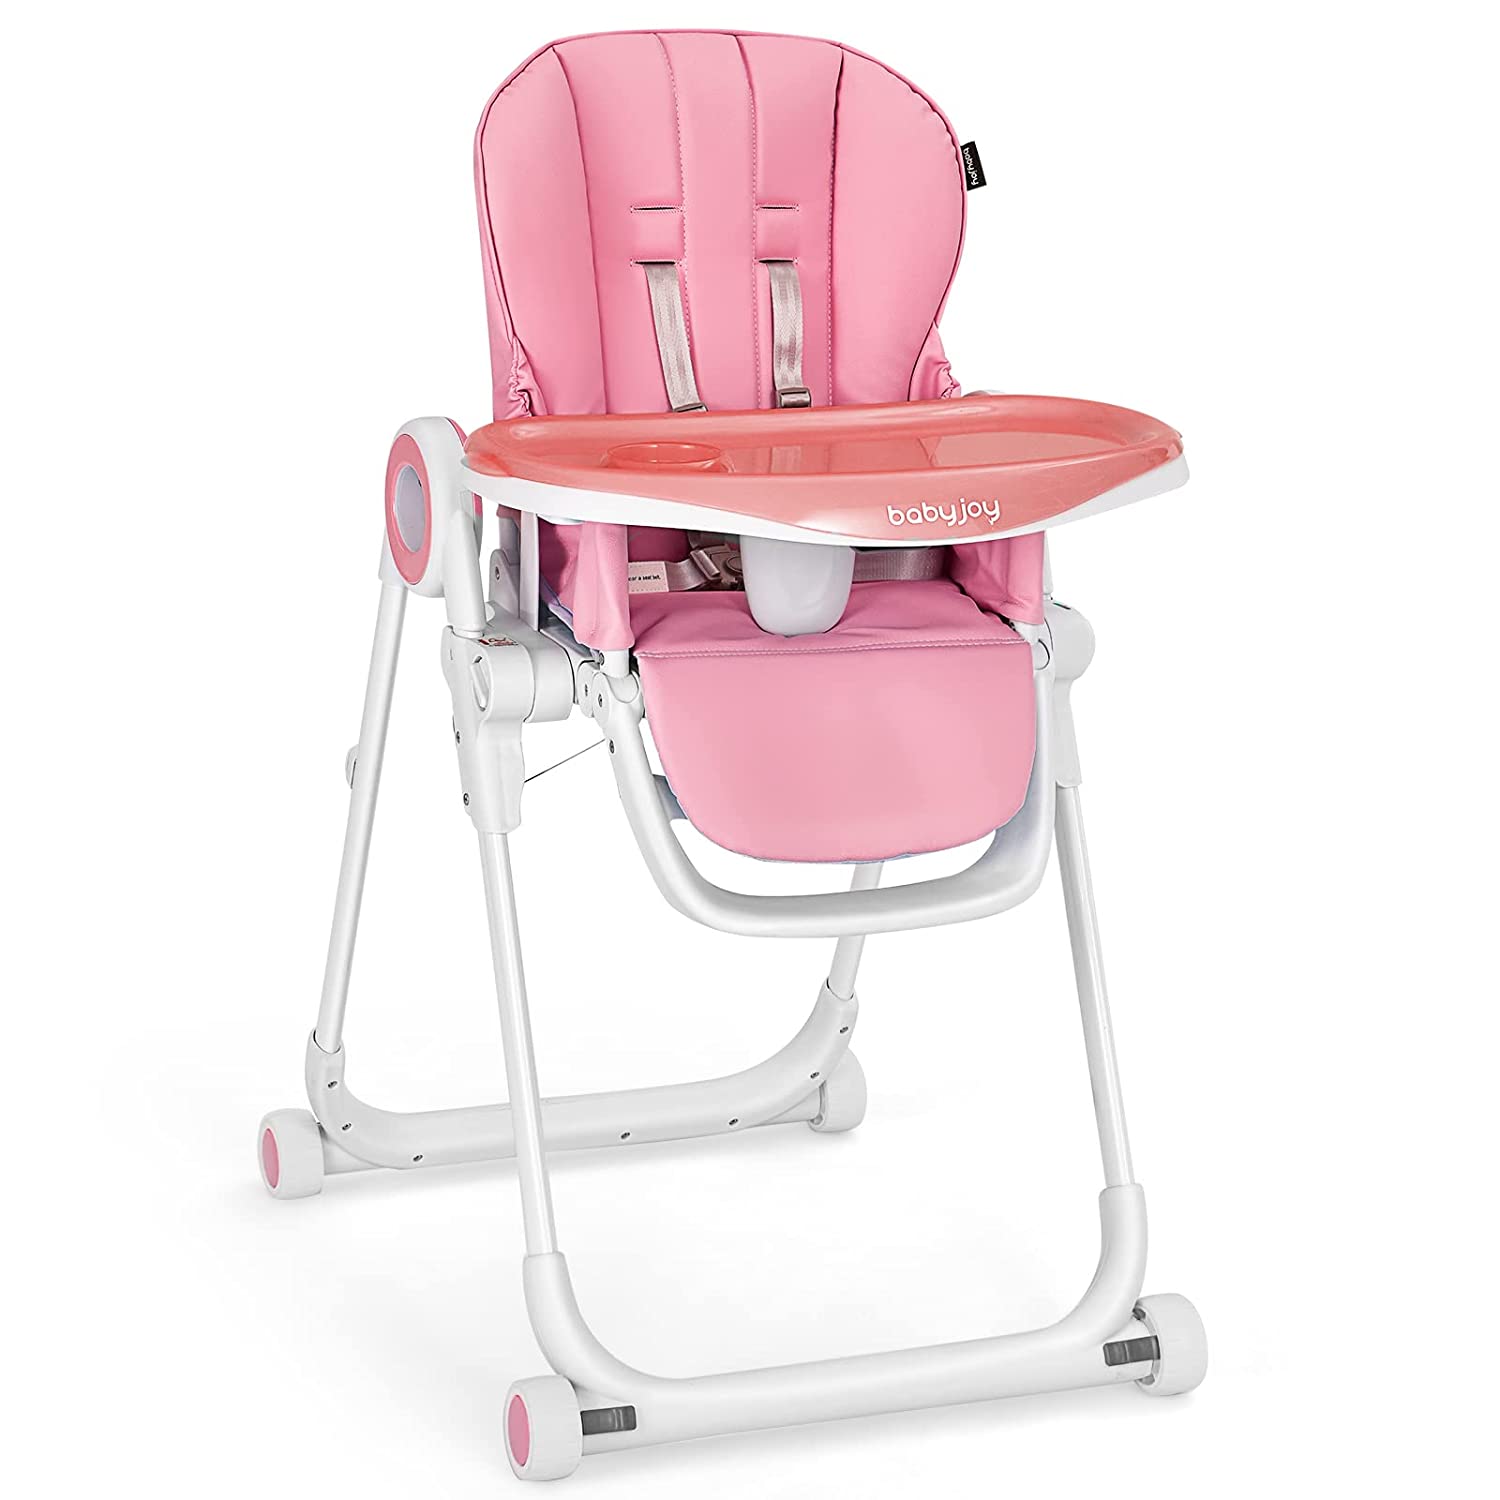 кресло туристическое atemi afc 770b с регулировкой положения спинки 3 позиции Складной стульчик для кормления с регулируемой спинкой Baby Joy, розовый